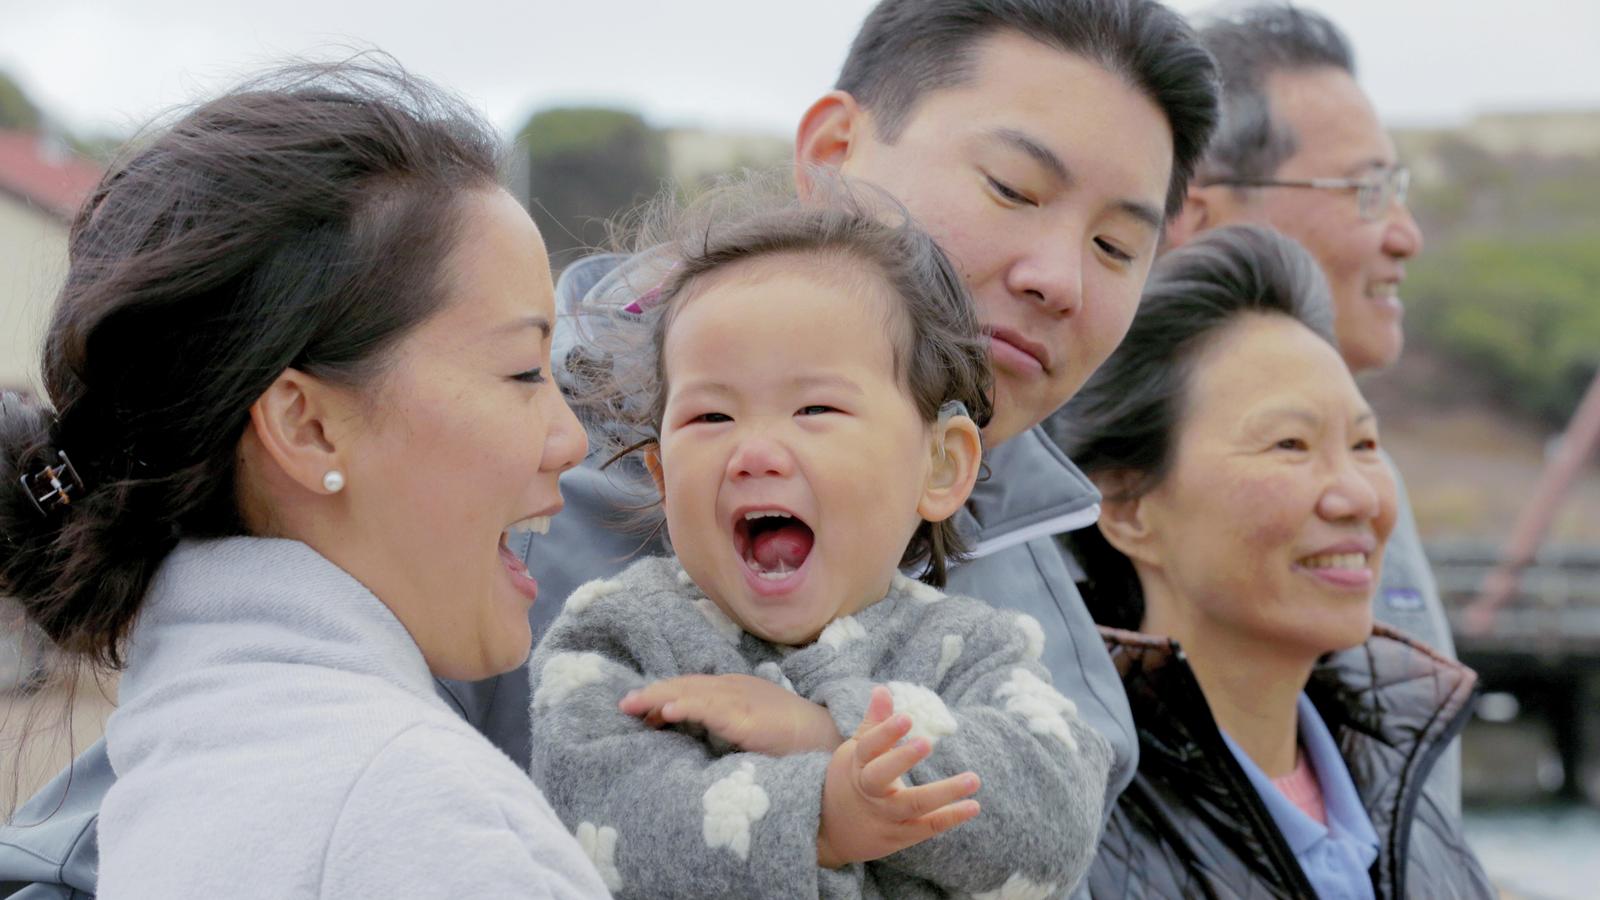 Su og hendes familie griner under en udflugt